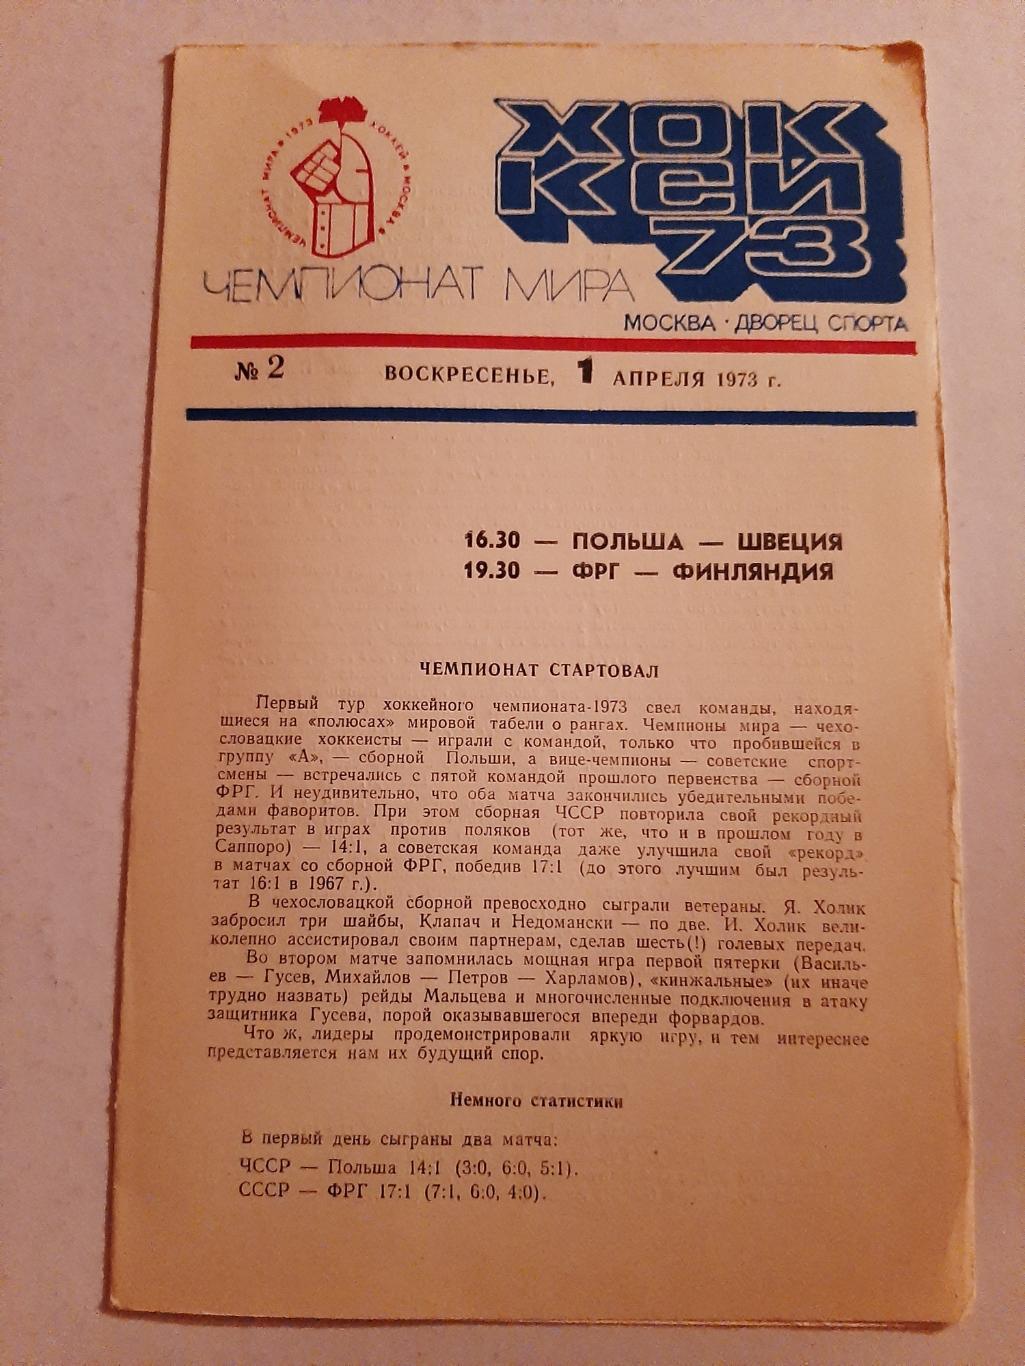 Польша - Швеция, ФРГ - Финляндия 1.04.1973